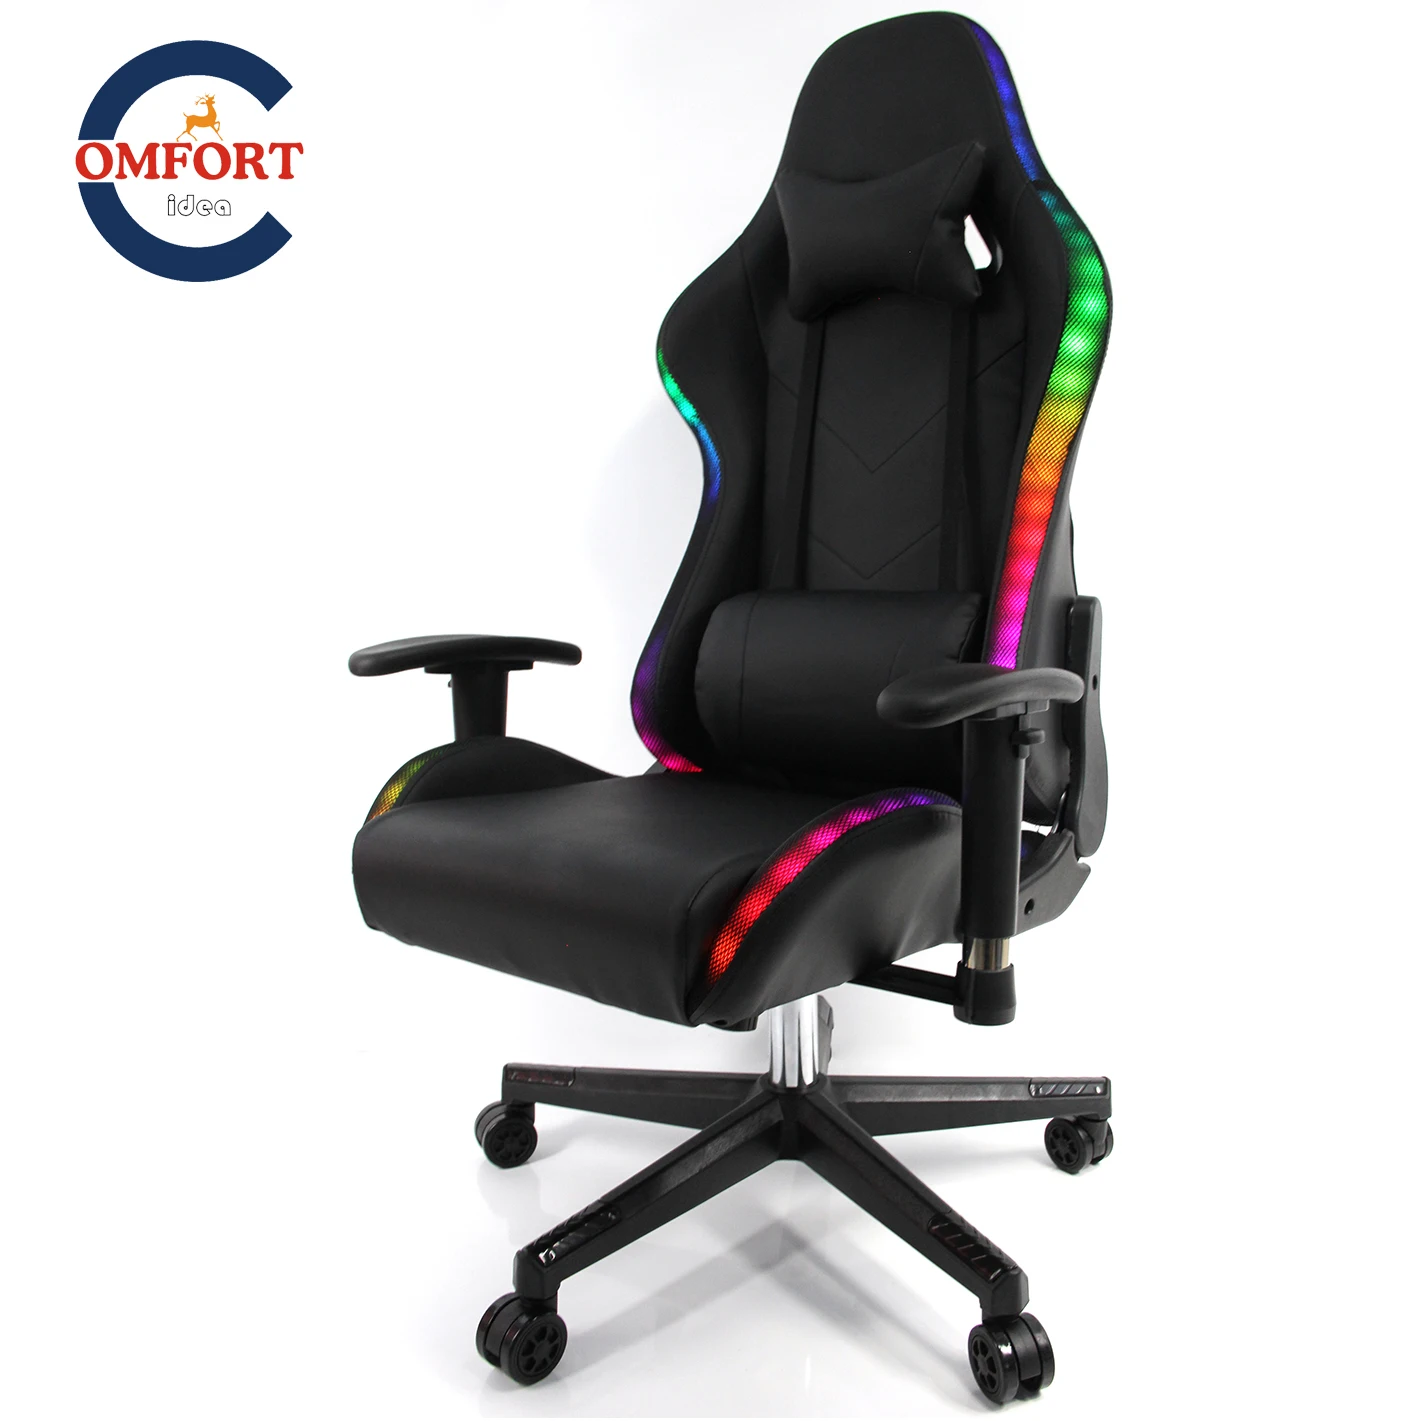 

2021 Новыое Геймерское Кресло С Подсветкой WCG Игровой Стул Разноцветные Огни RGB Кресло Компьютерное С Лифтом Стильное И Удобно